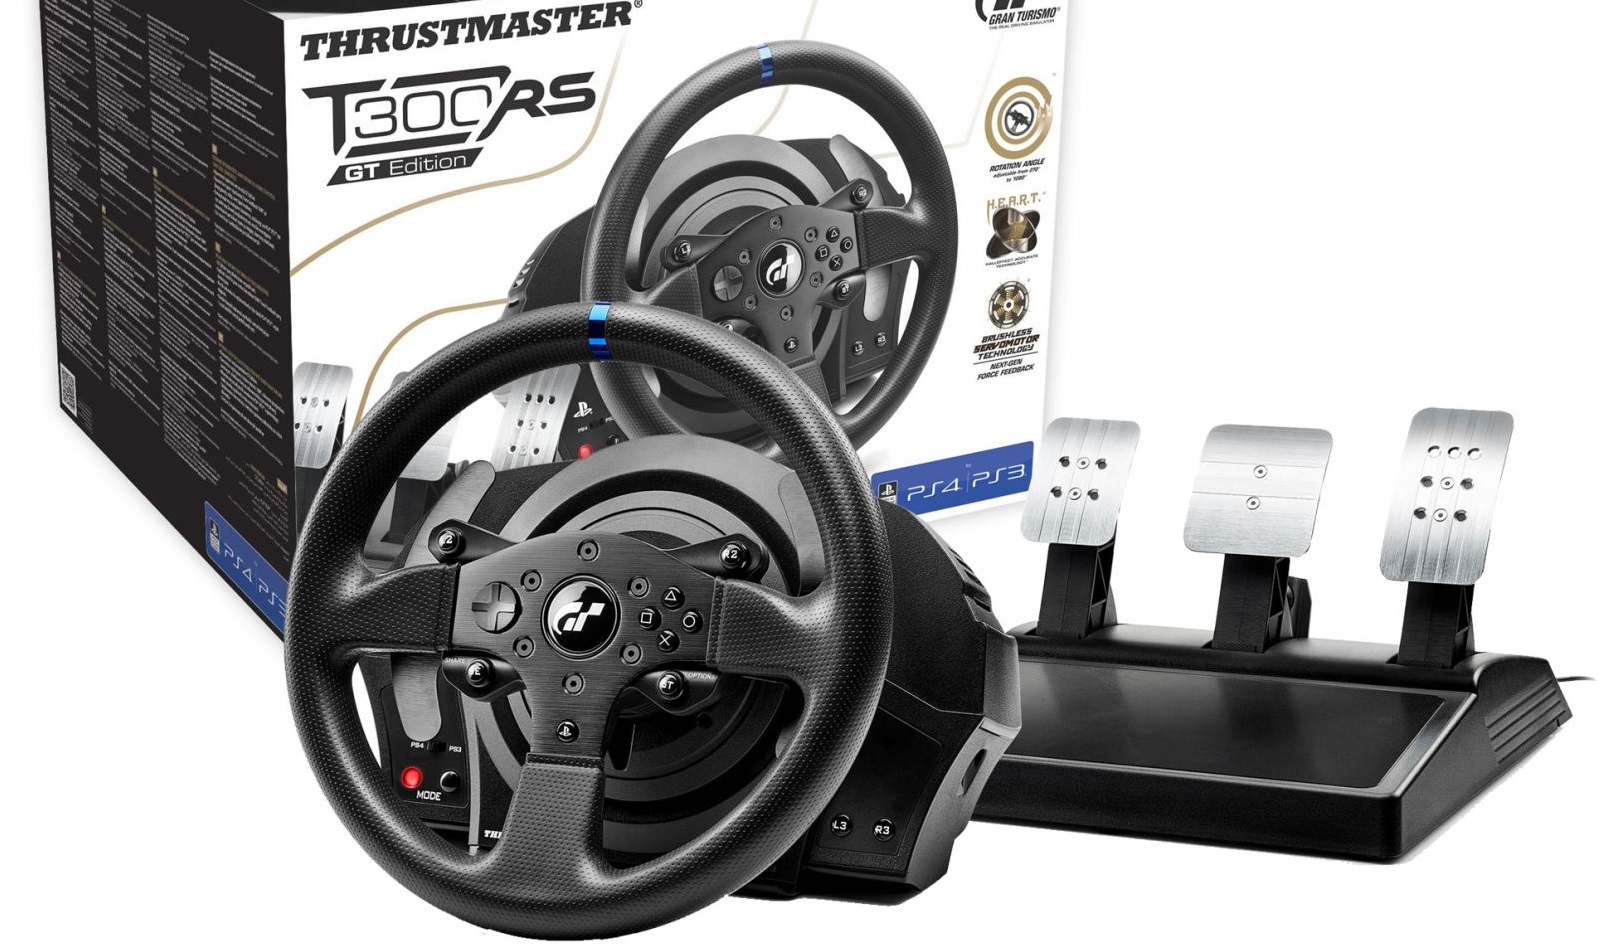 Bộ Vô Lăng Thrustmaster T300 RS GT Edition - Racing Wheel (P5,PS4,PS3, PC)  HÀNG CHÍNH HÃNG | Lazada.vn